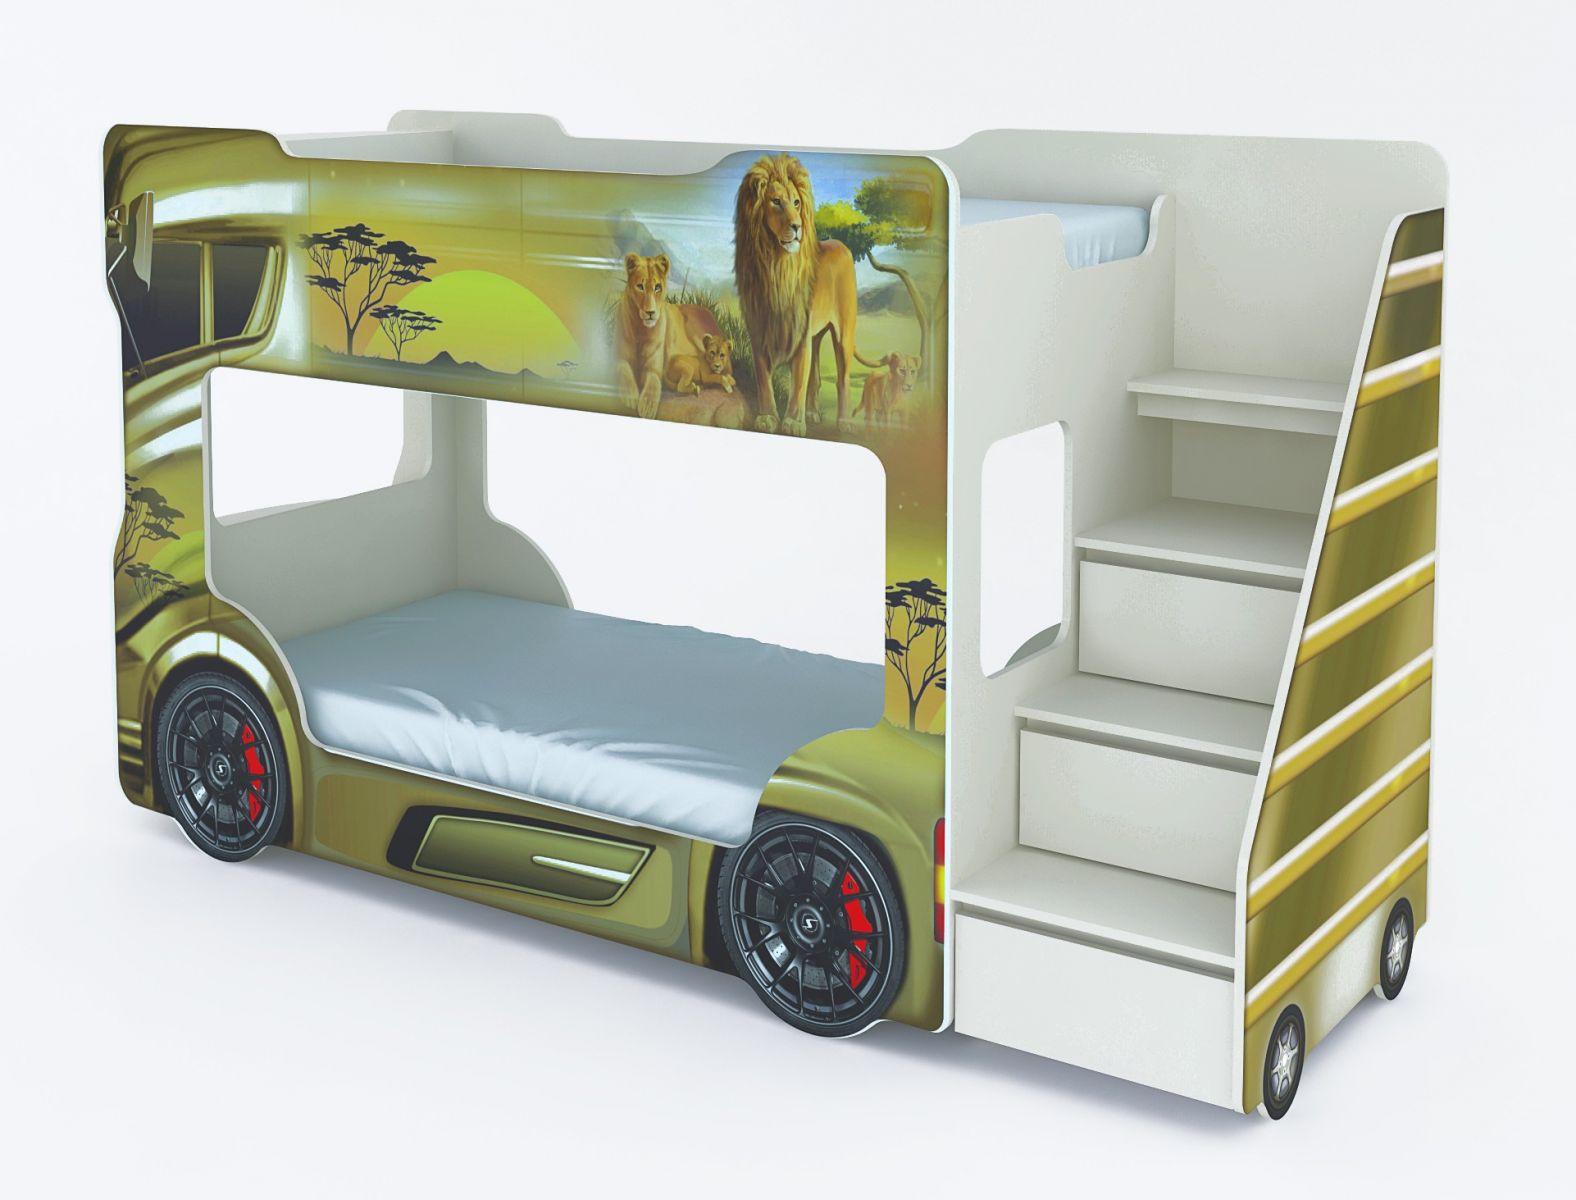 кровать автобус, двухъярусная кровать автобус, кровать автобус детская, кровать автобус купить, кровать в виде автобуса, детская двухъярусная кровать автобус, двухэтажная кровать автобус, двухъярусная кровать автобус